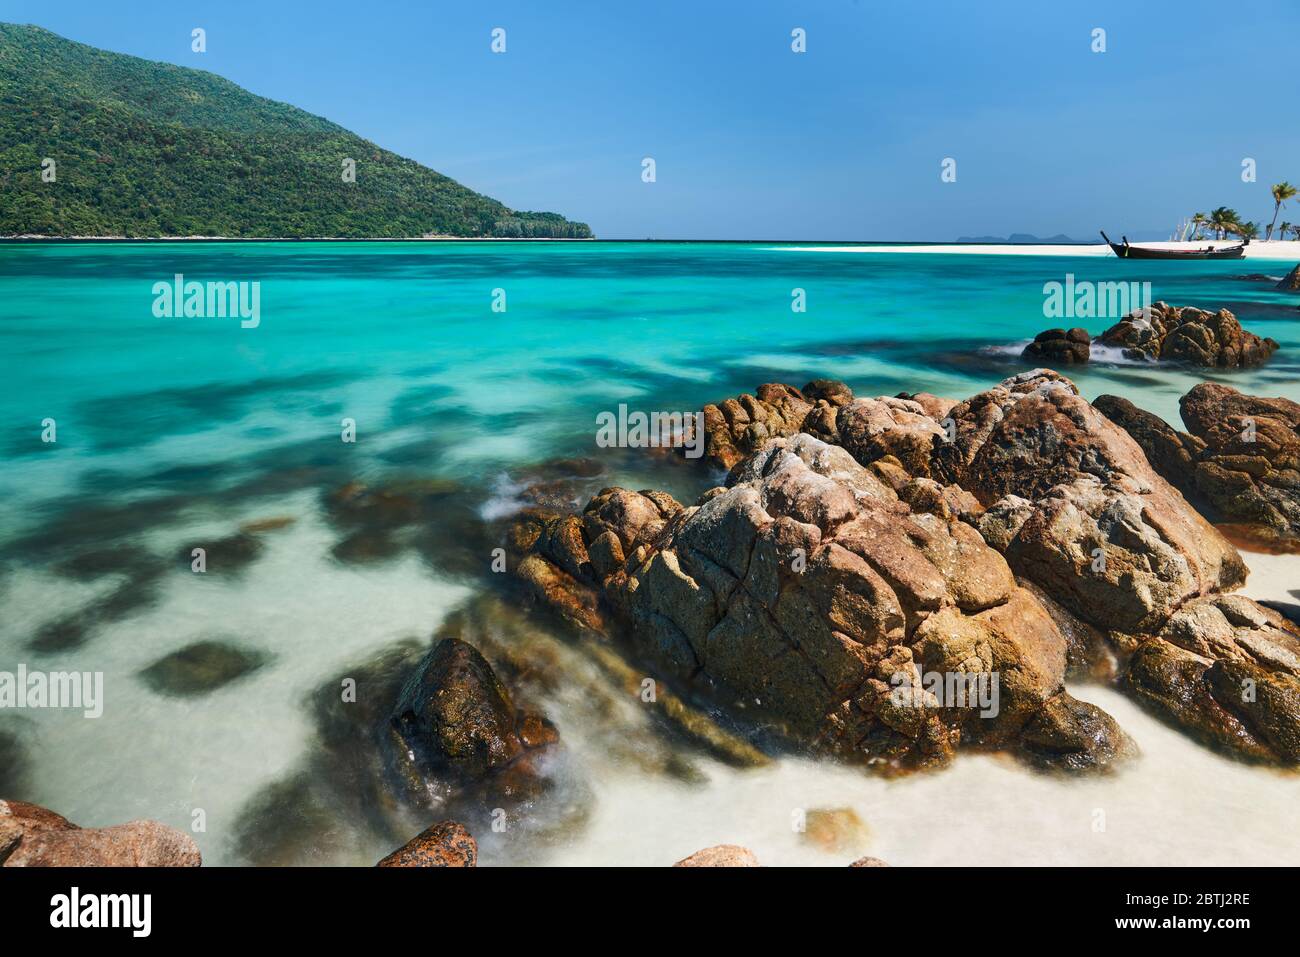 Das türkisfarbene Meer auf der tropischen Insel. Landschaft, Urlaub, Sommer Reisekonzept Stockfoto